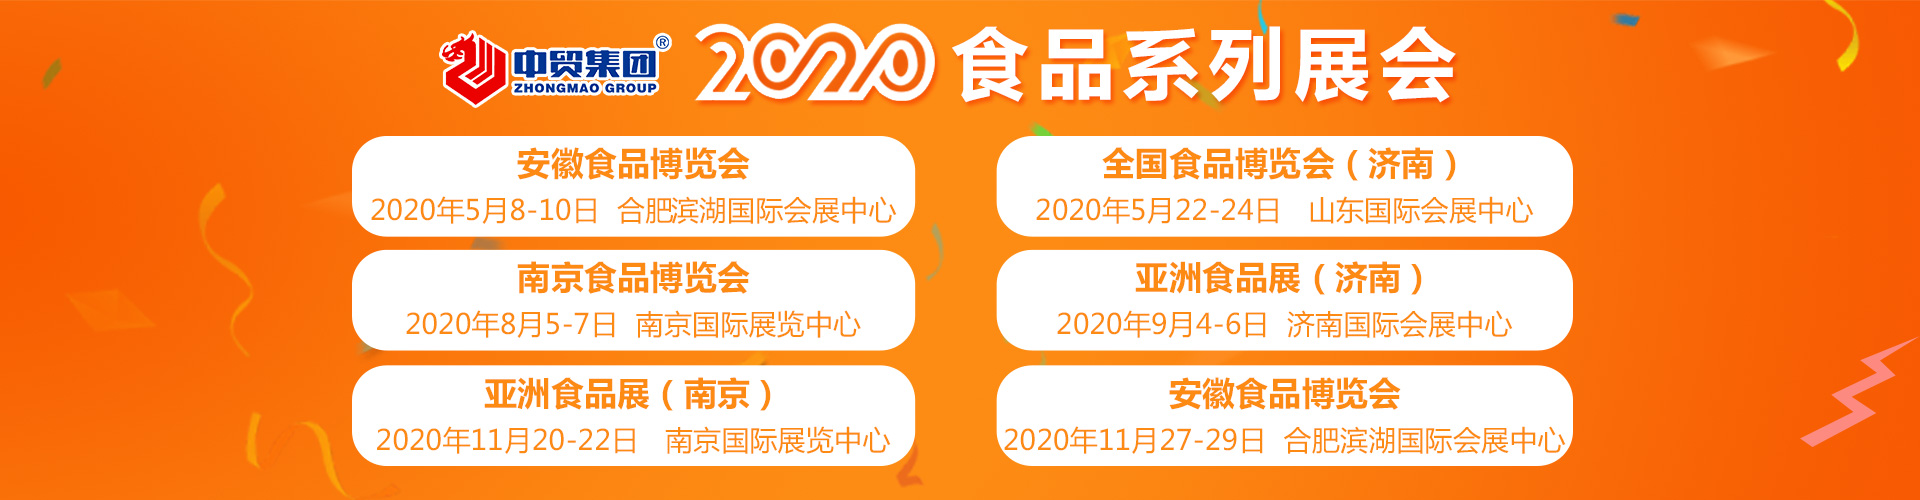 南京2020*八届中国南京食品博览会日程安排 南京食品展 咨询服务